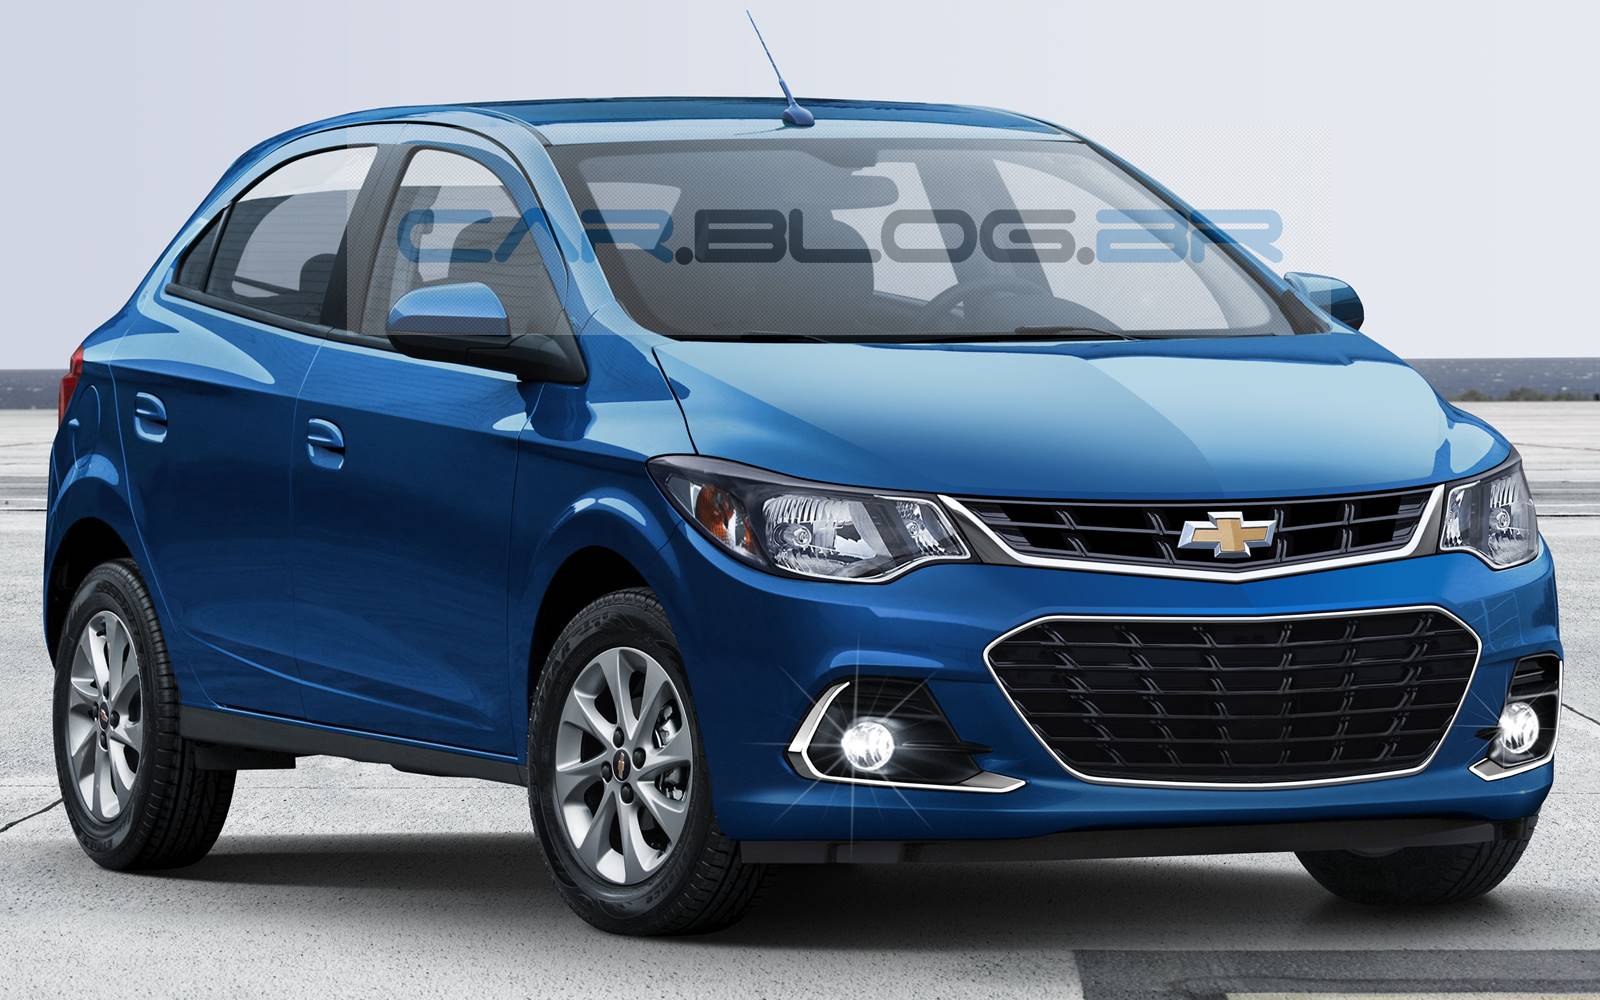 Novo Chevrolet Onix 2017: imagens antecipam facelift